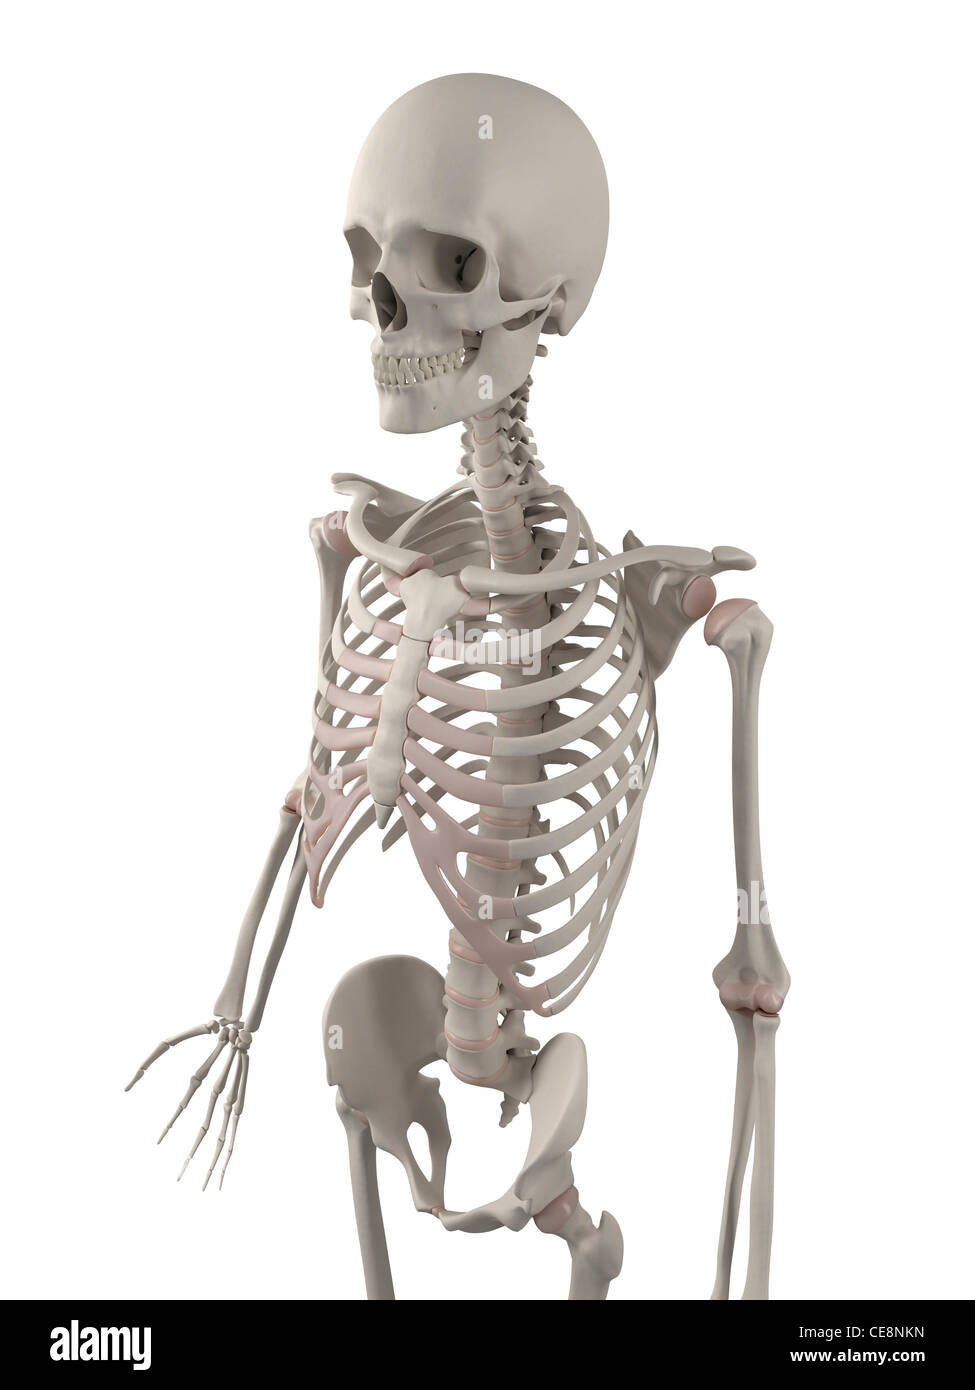 Skeleton, computer artwork Stock Photo - Alamy